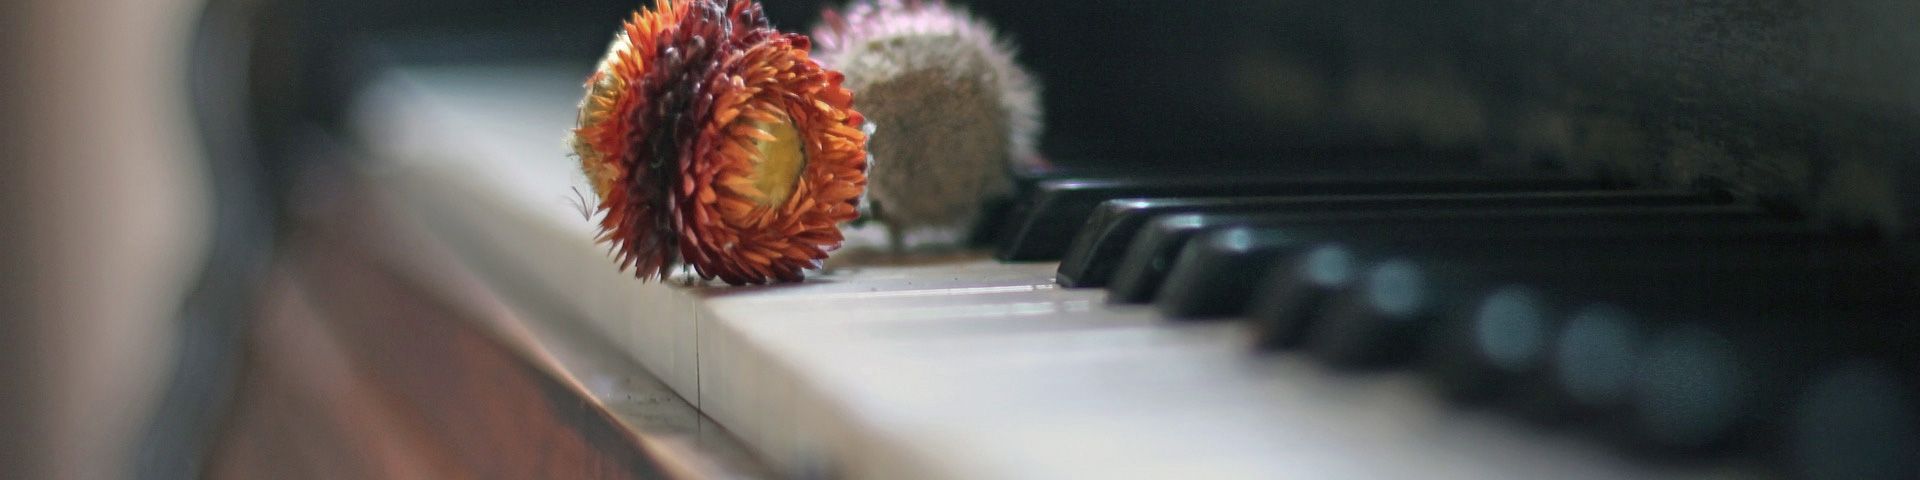 Detailaufnahme getrocknete Blüten auf Klavier